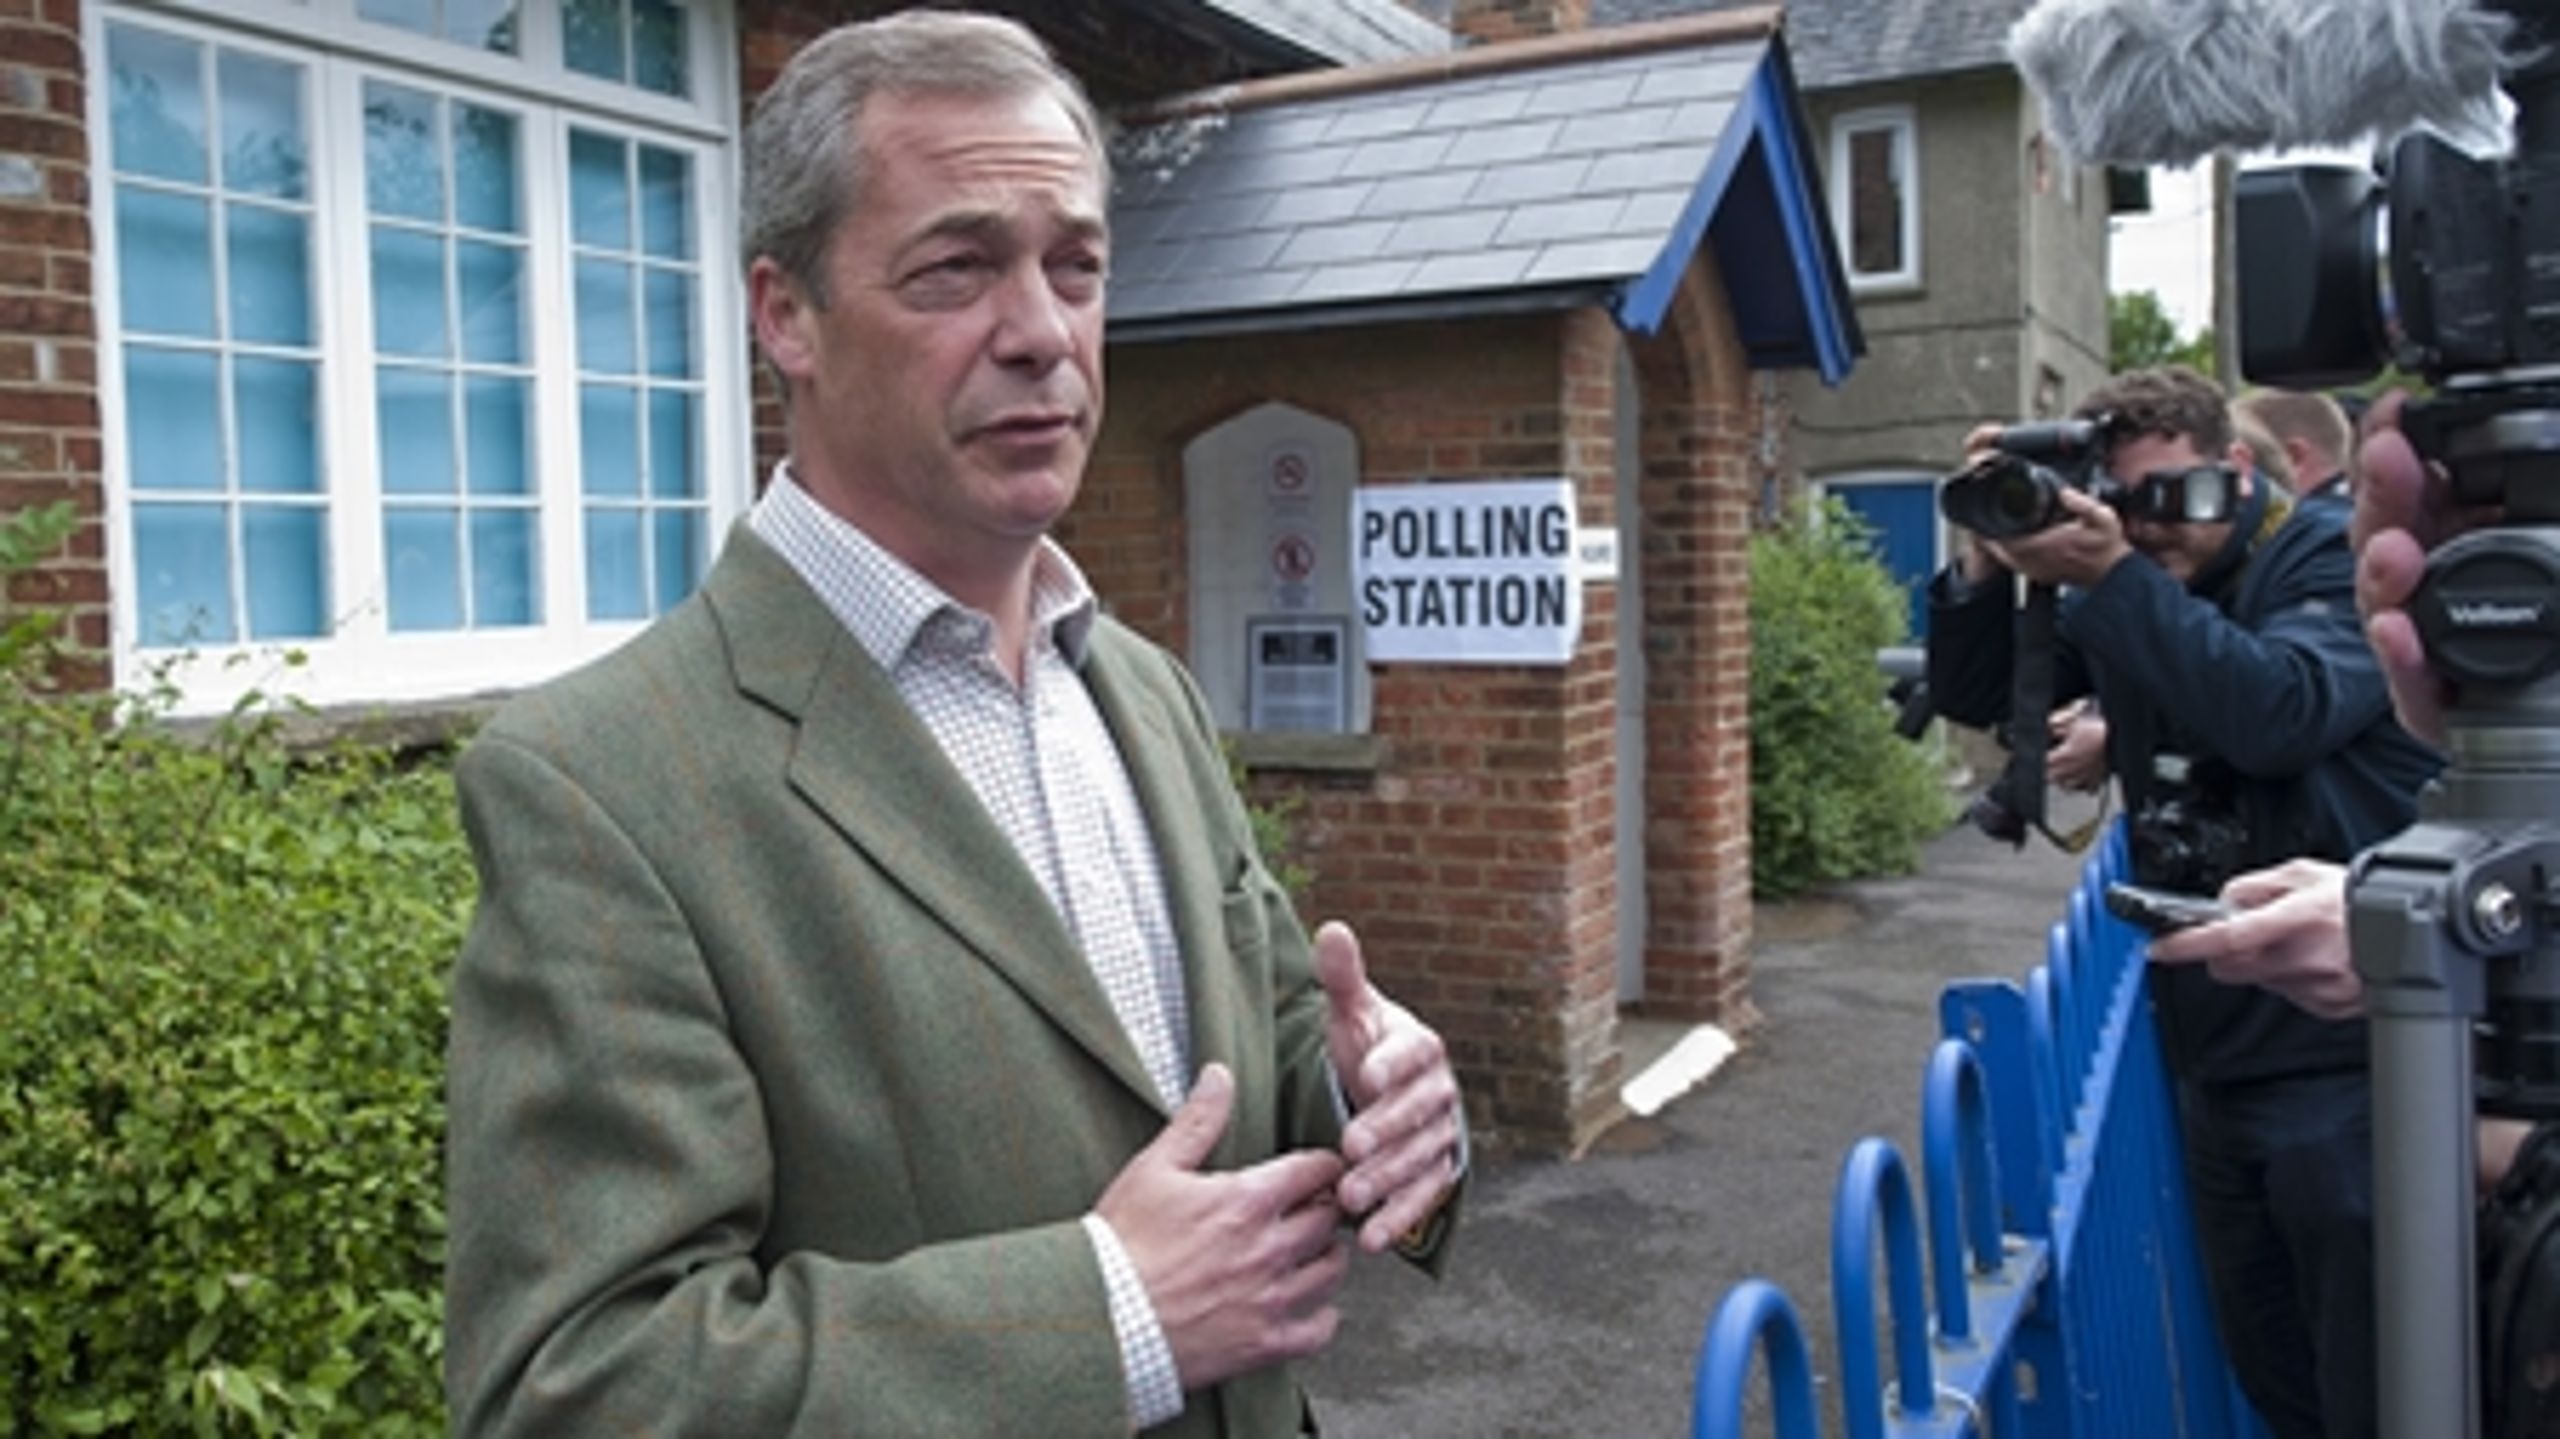 Lederen af UK Independence Party, Nigel Farage, er en af de europæere, der faktisk dukkede op ved stemmeurnerne. Nu venter alle spændt på at se, hvor godt han og andre EU-kritikere har klaret sig til valget.